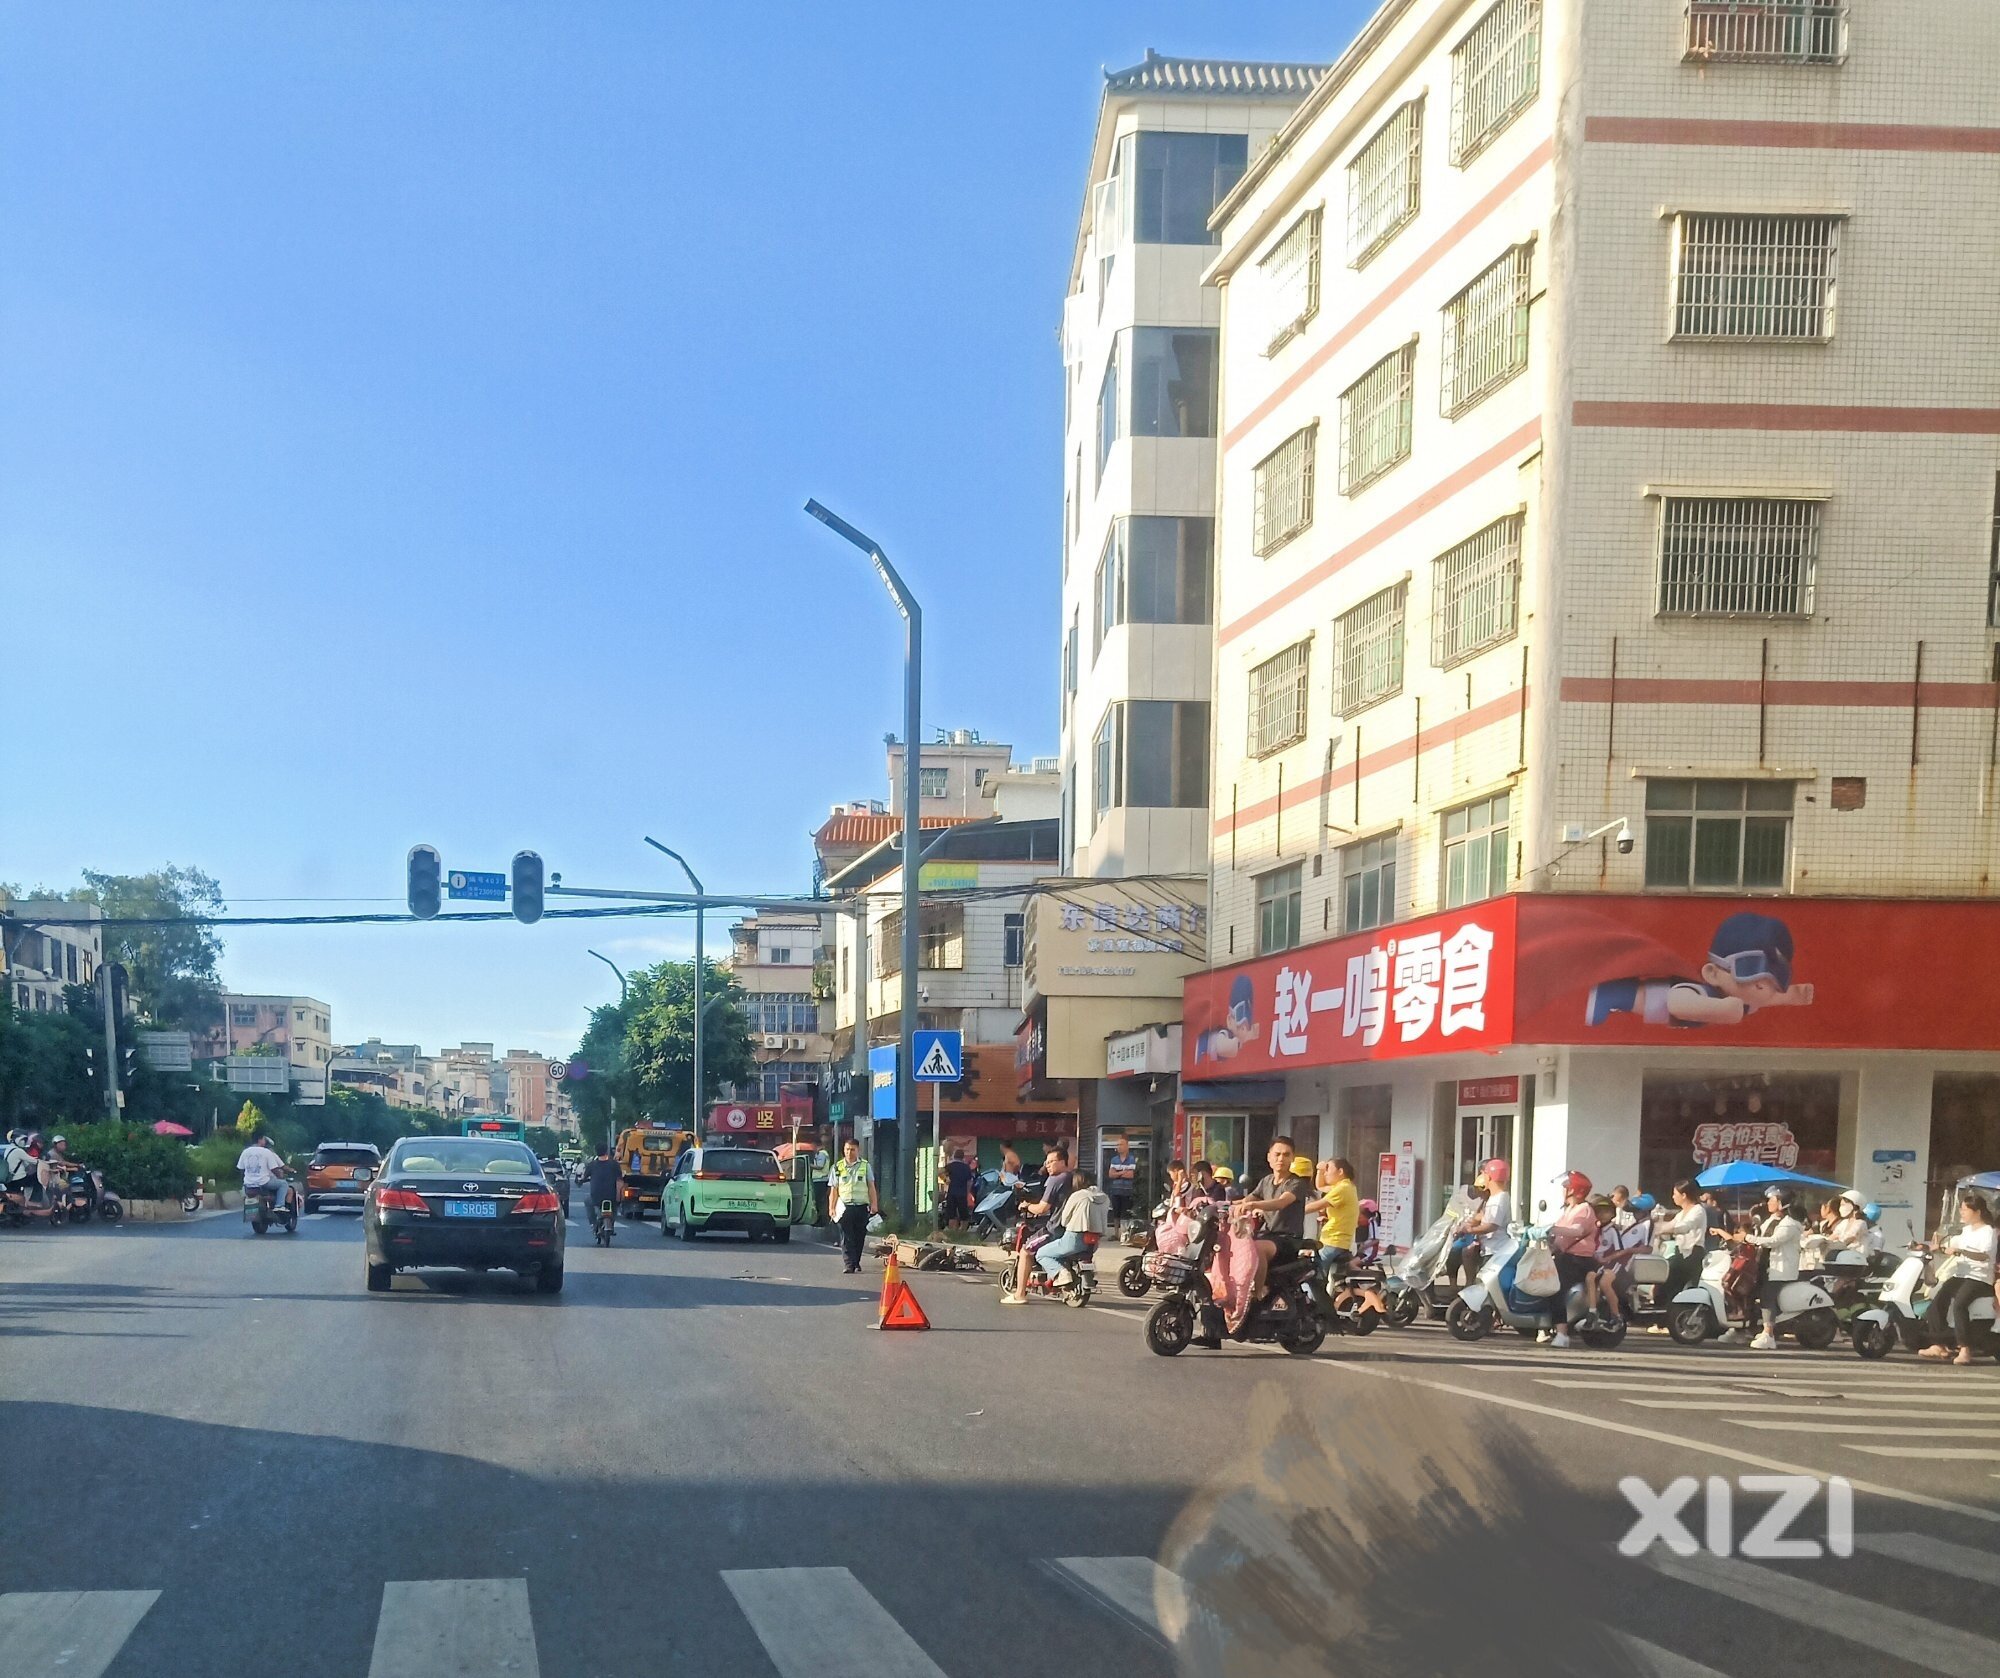 大镬：陈江邮局十字路口小车与摩托车发生碰撞